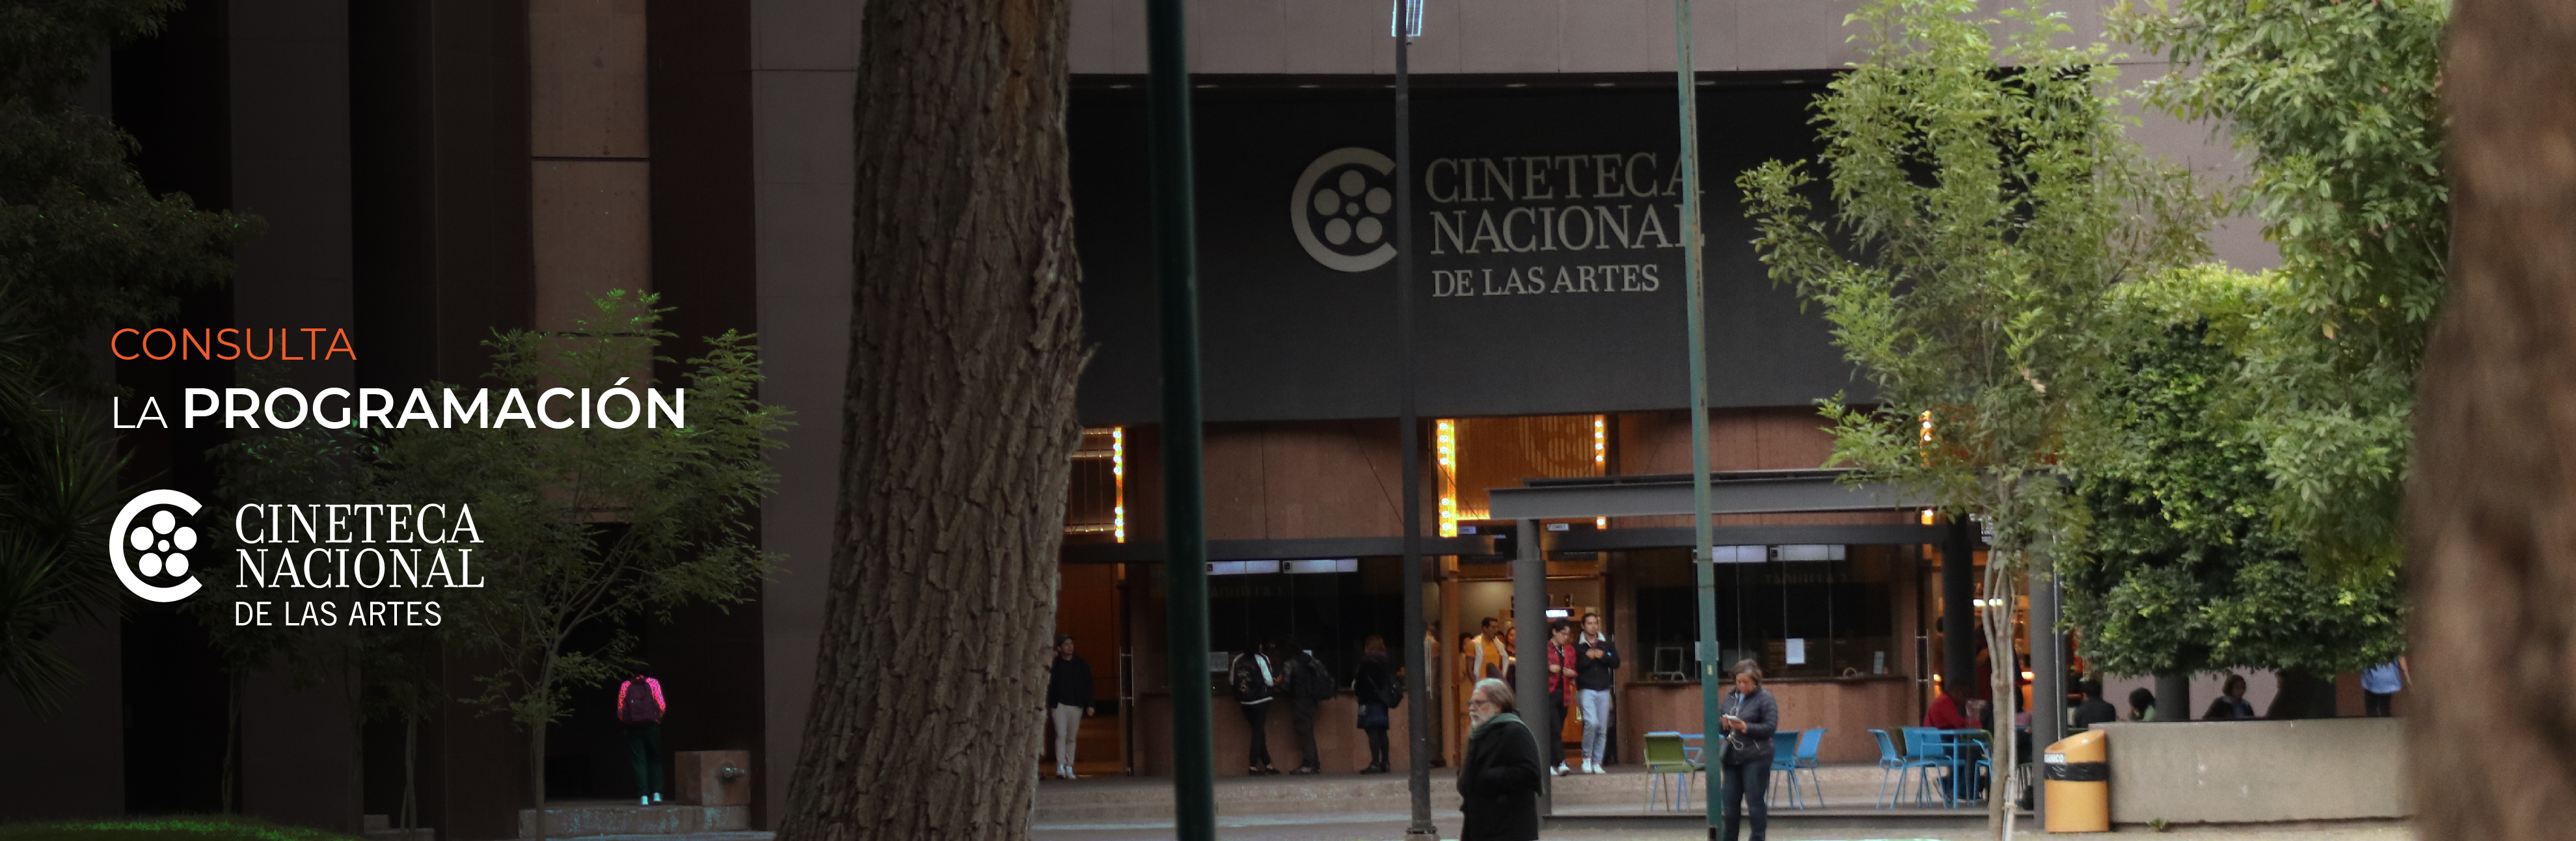 Cartelera Cineteca de las Artes